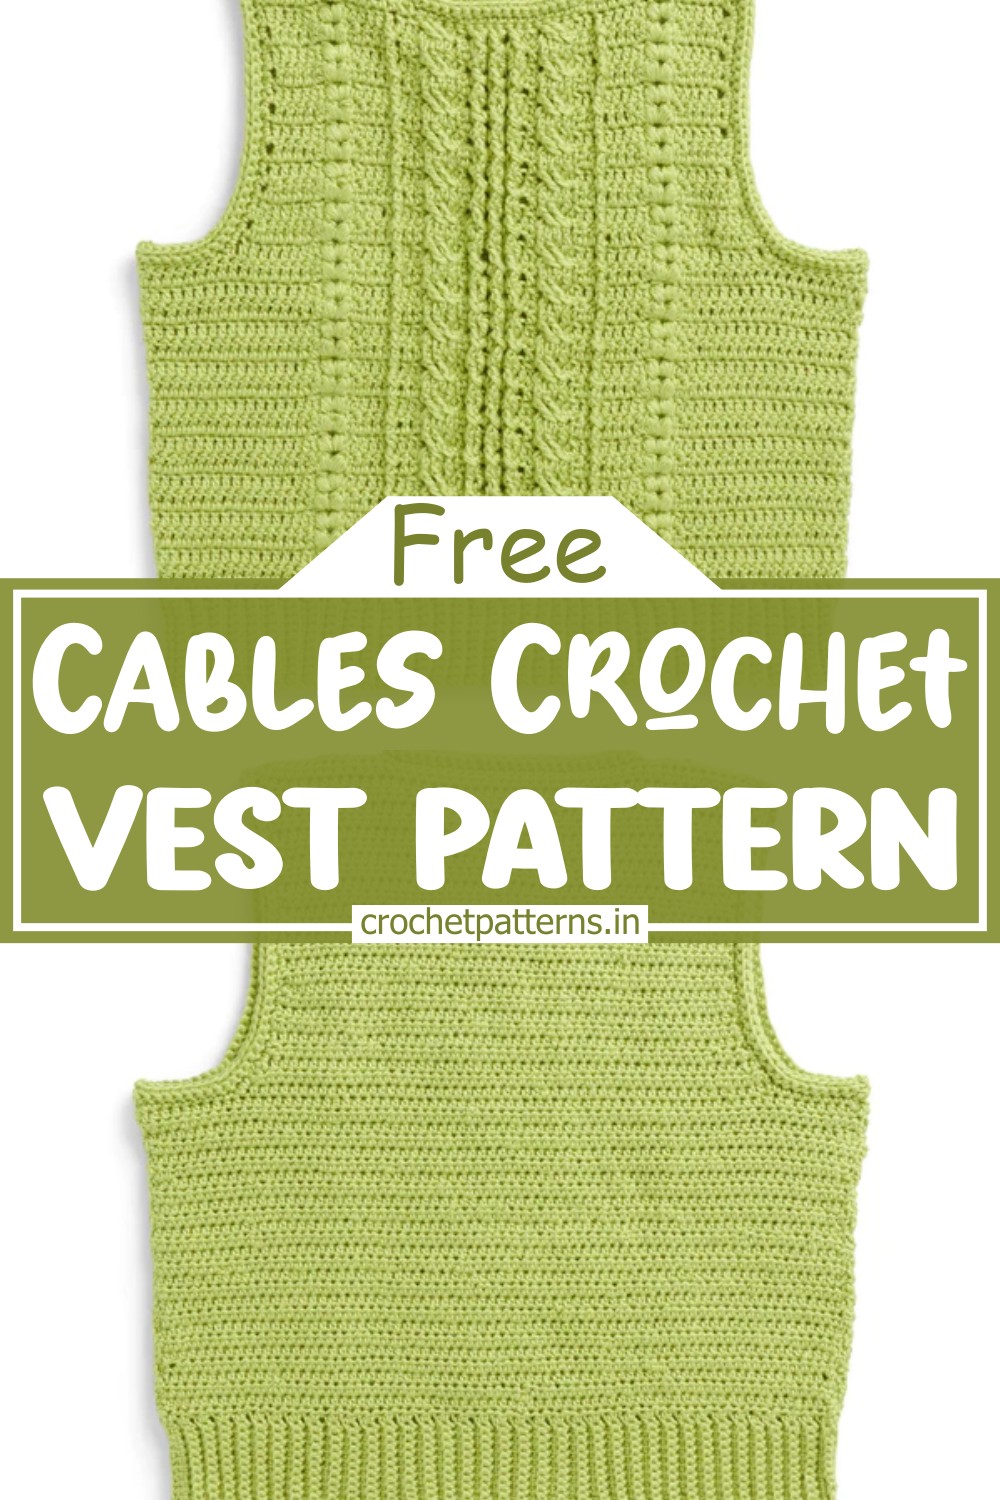 Cables Crochet Vest Pattern